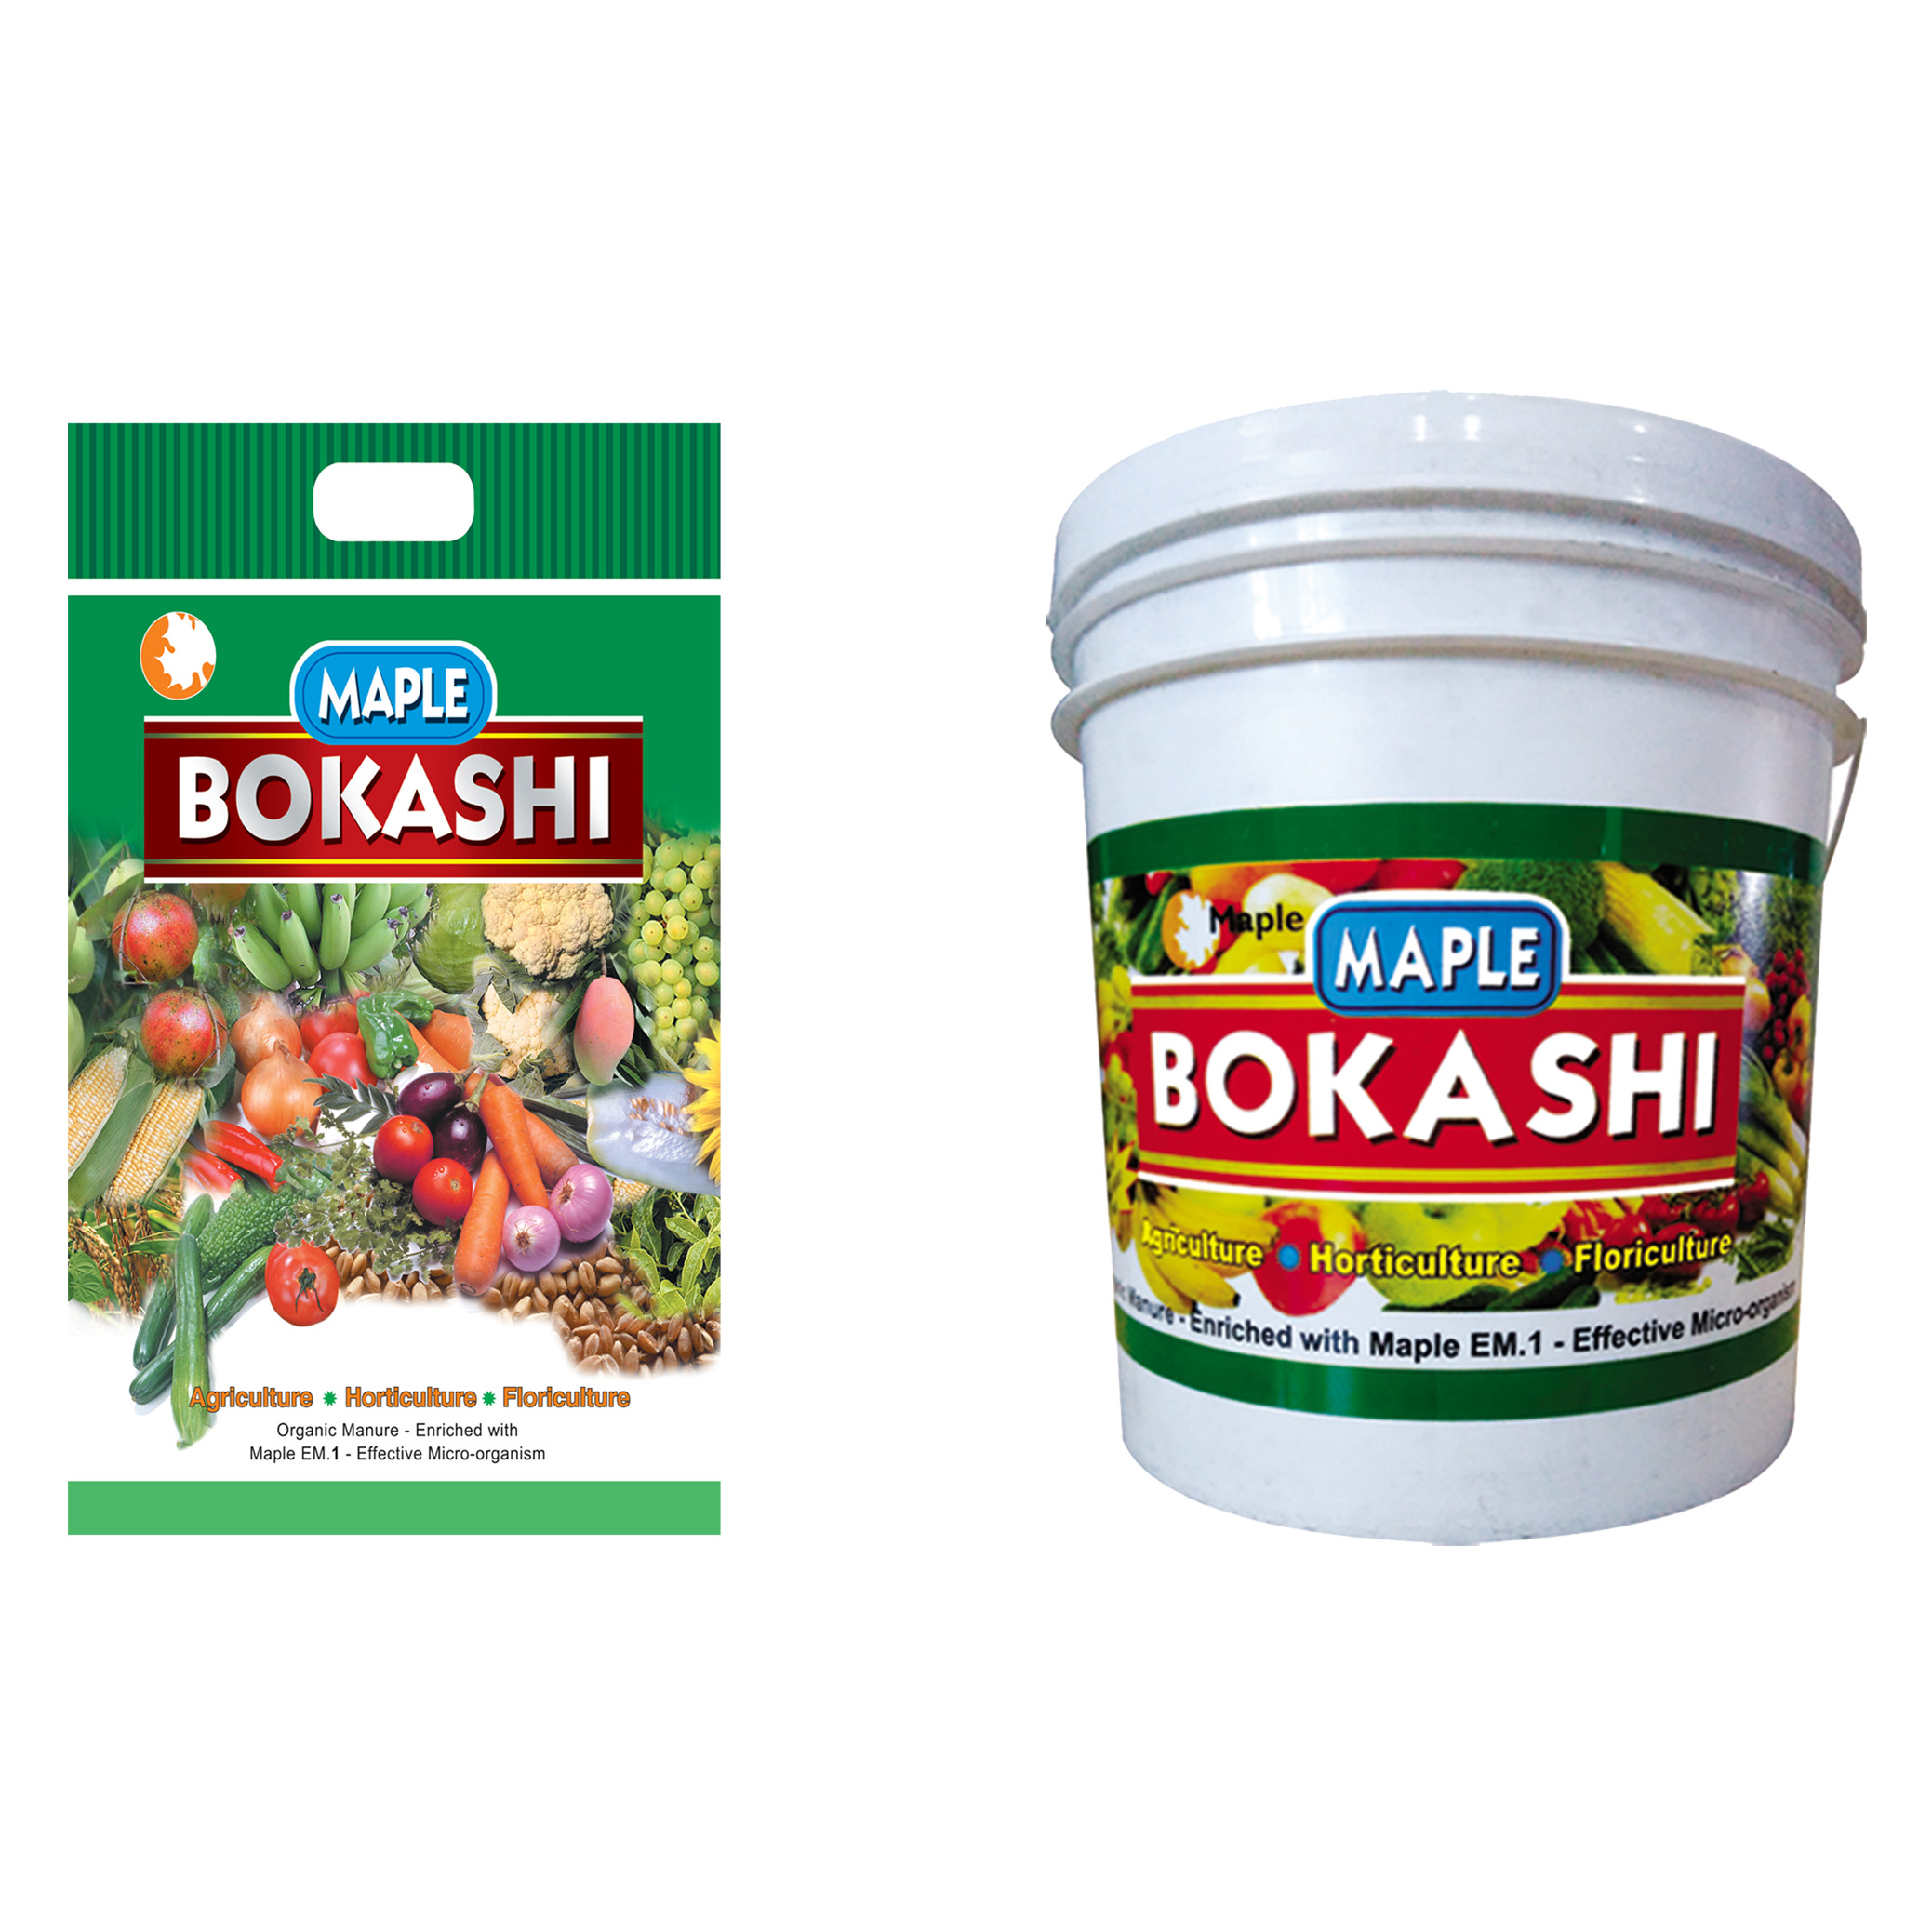 Bokashi for Agriculture